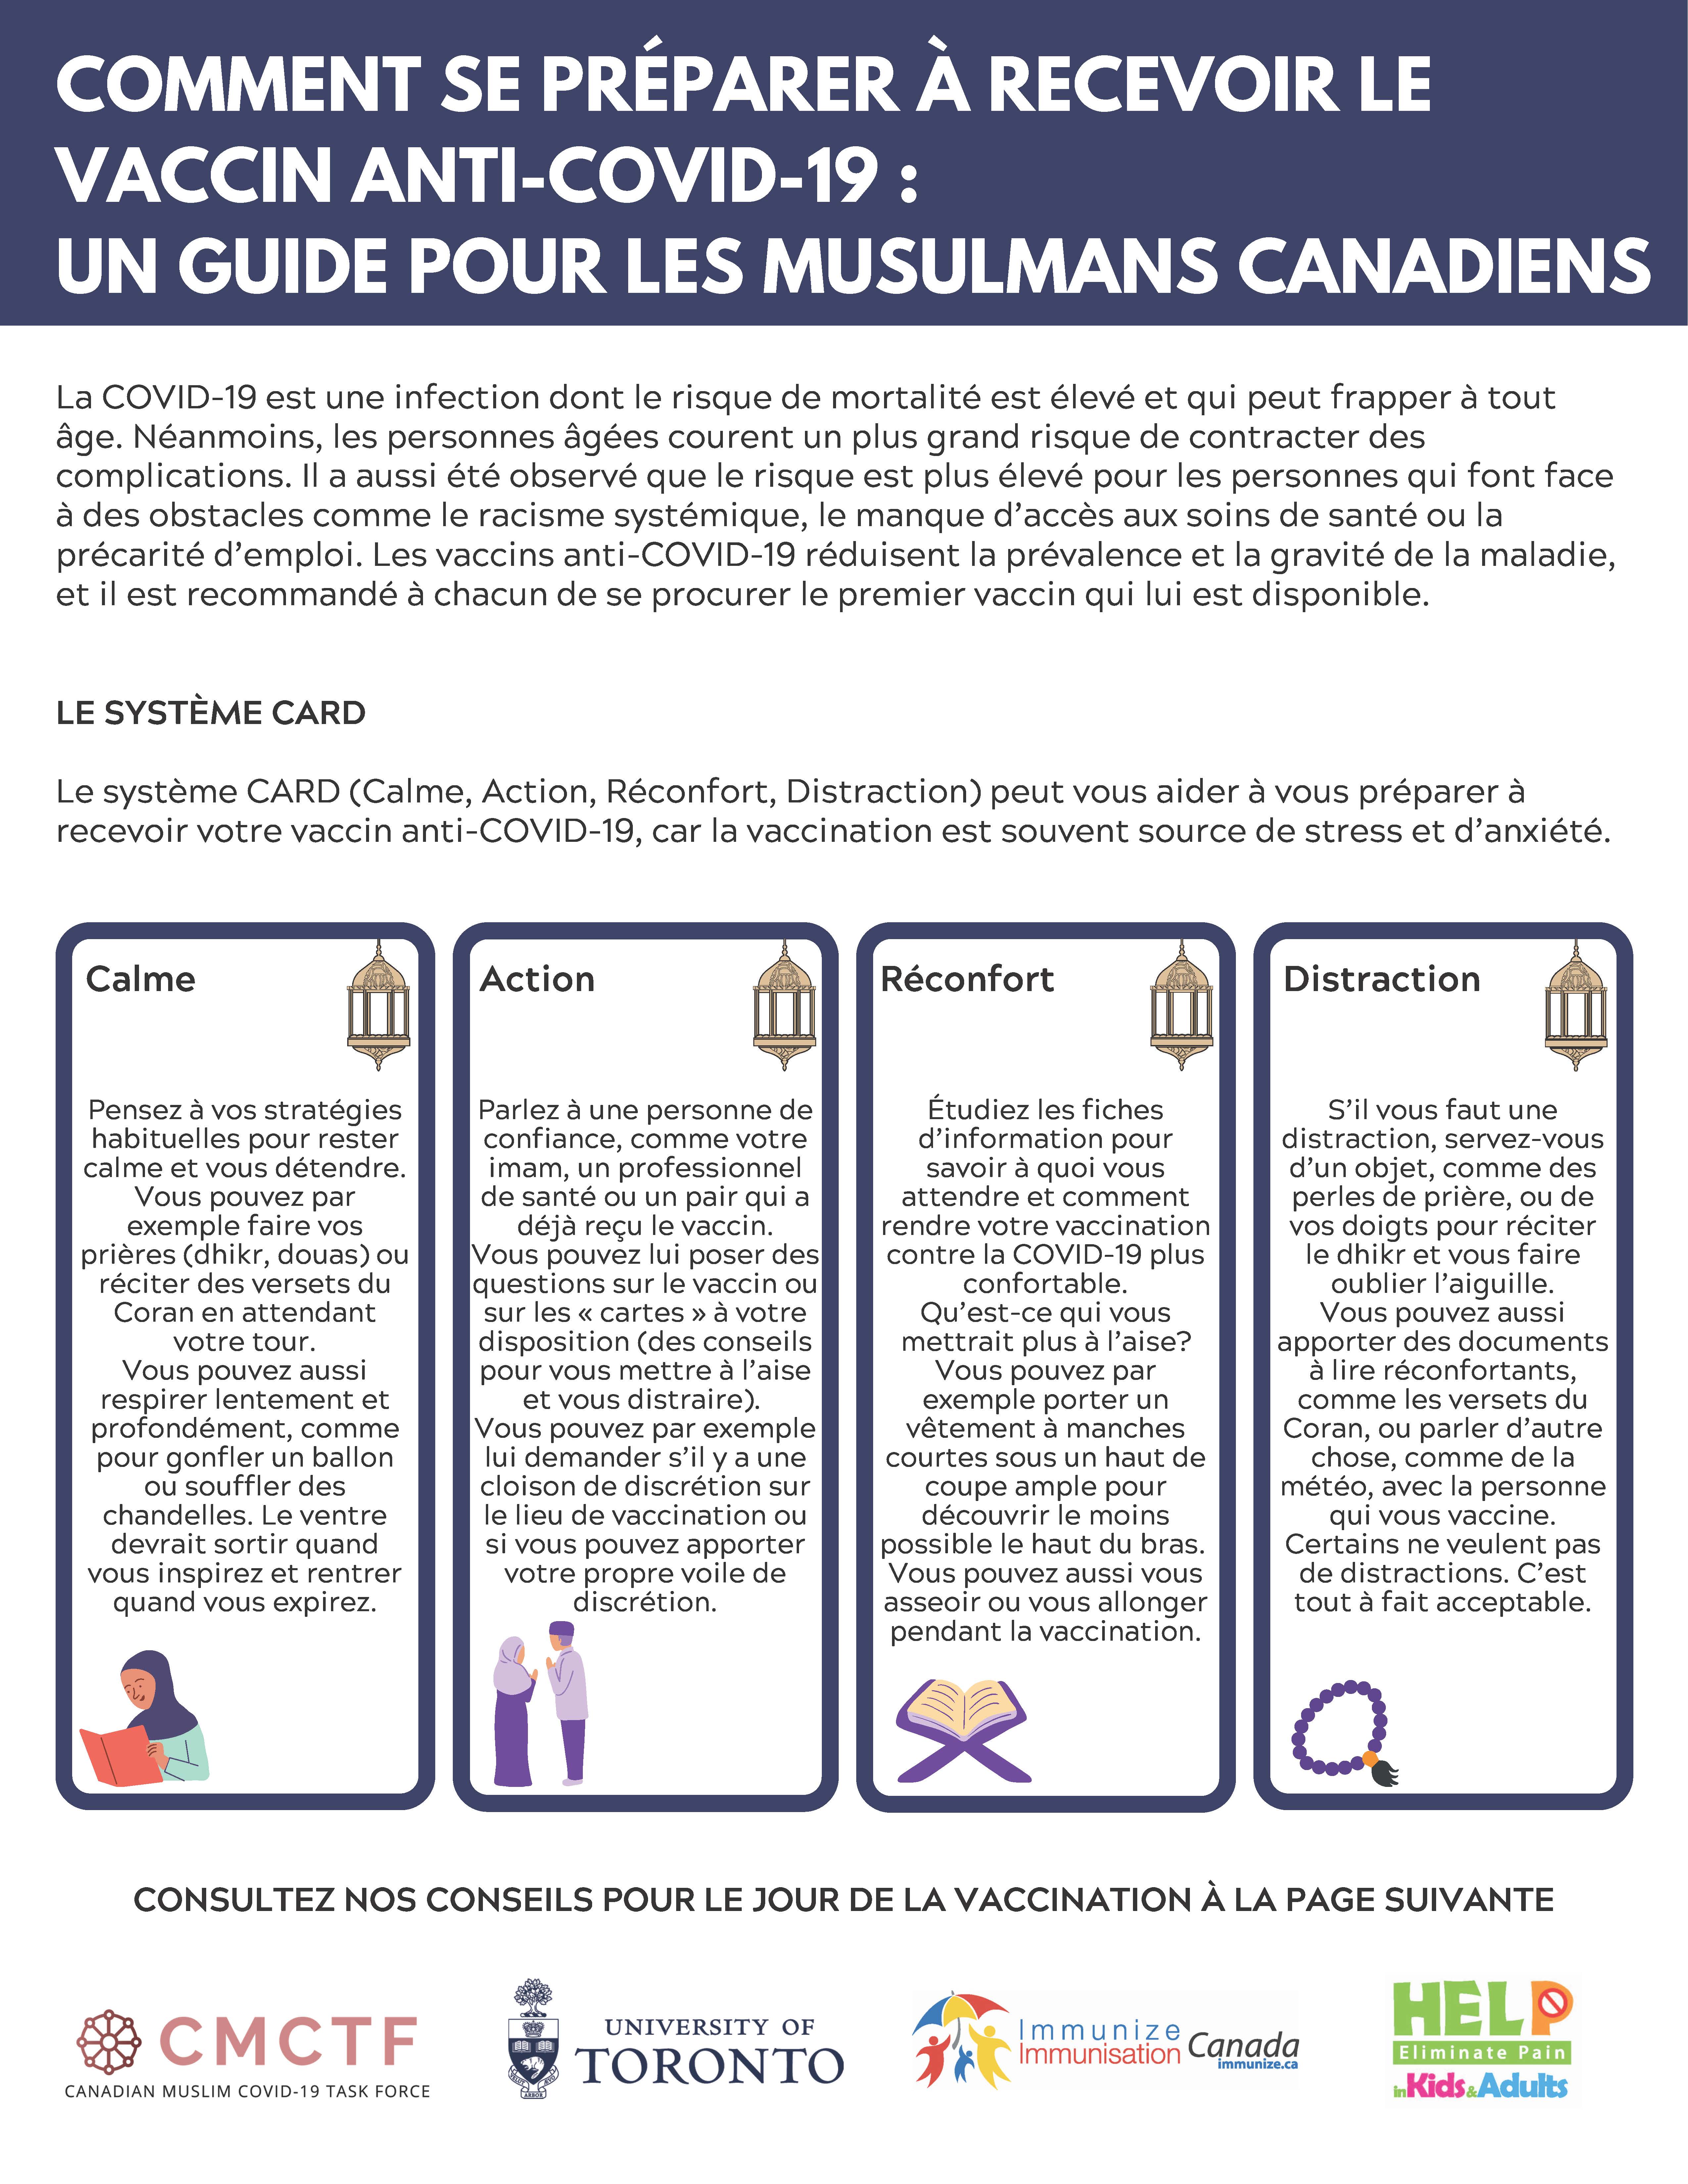 Comment se preparer a recevoir le vaccin anti-COVID-19 : Un guide pour les musulmans canadiens